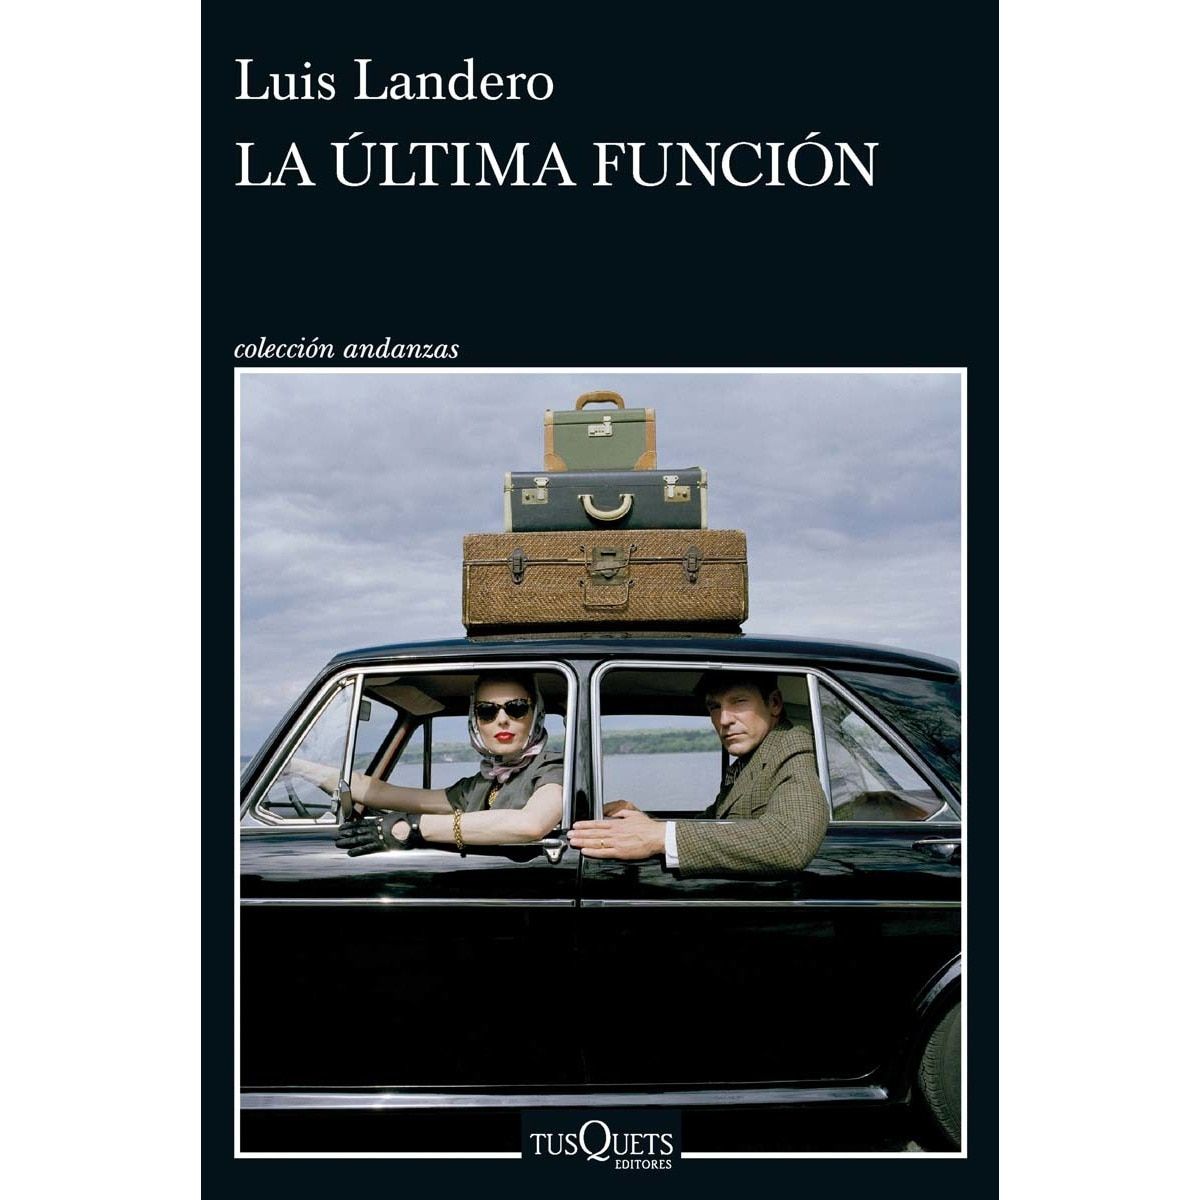 'La última función', Luis Landero